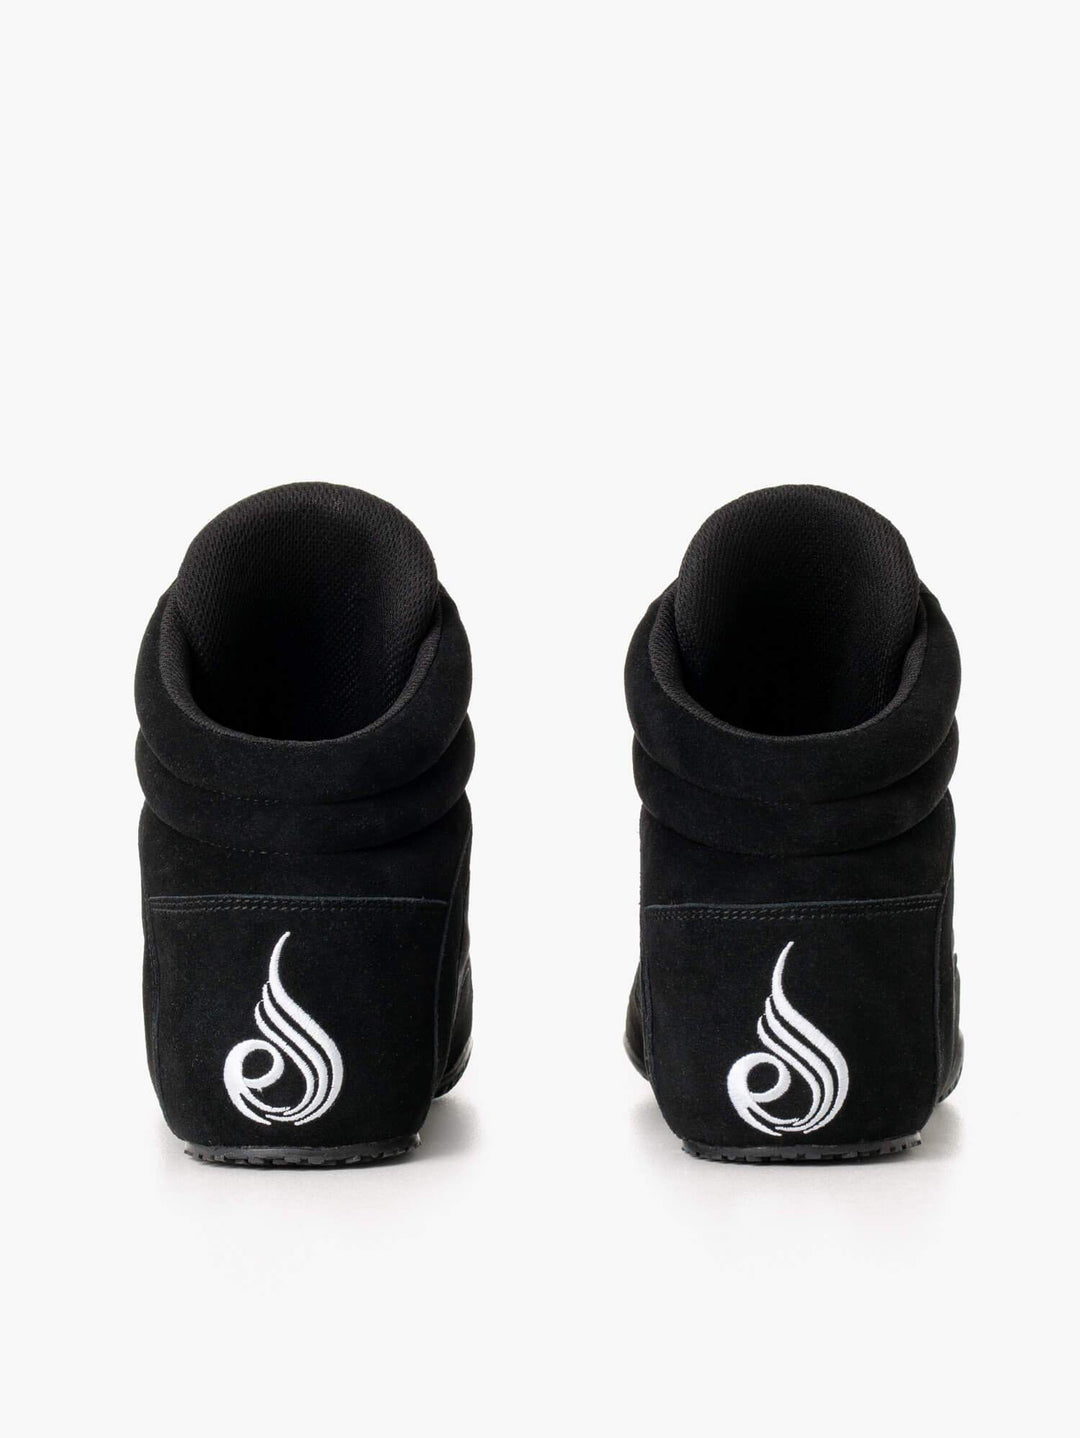 D-Mak Originals - Black Shoes Ryderwear 